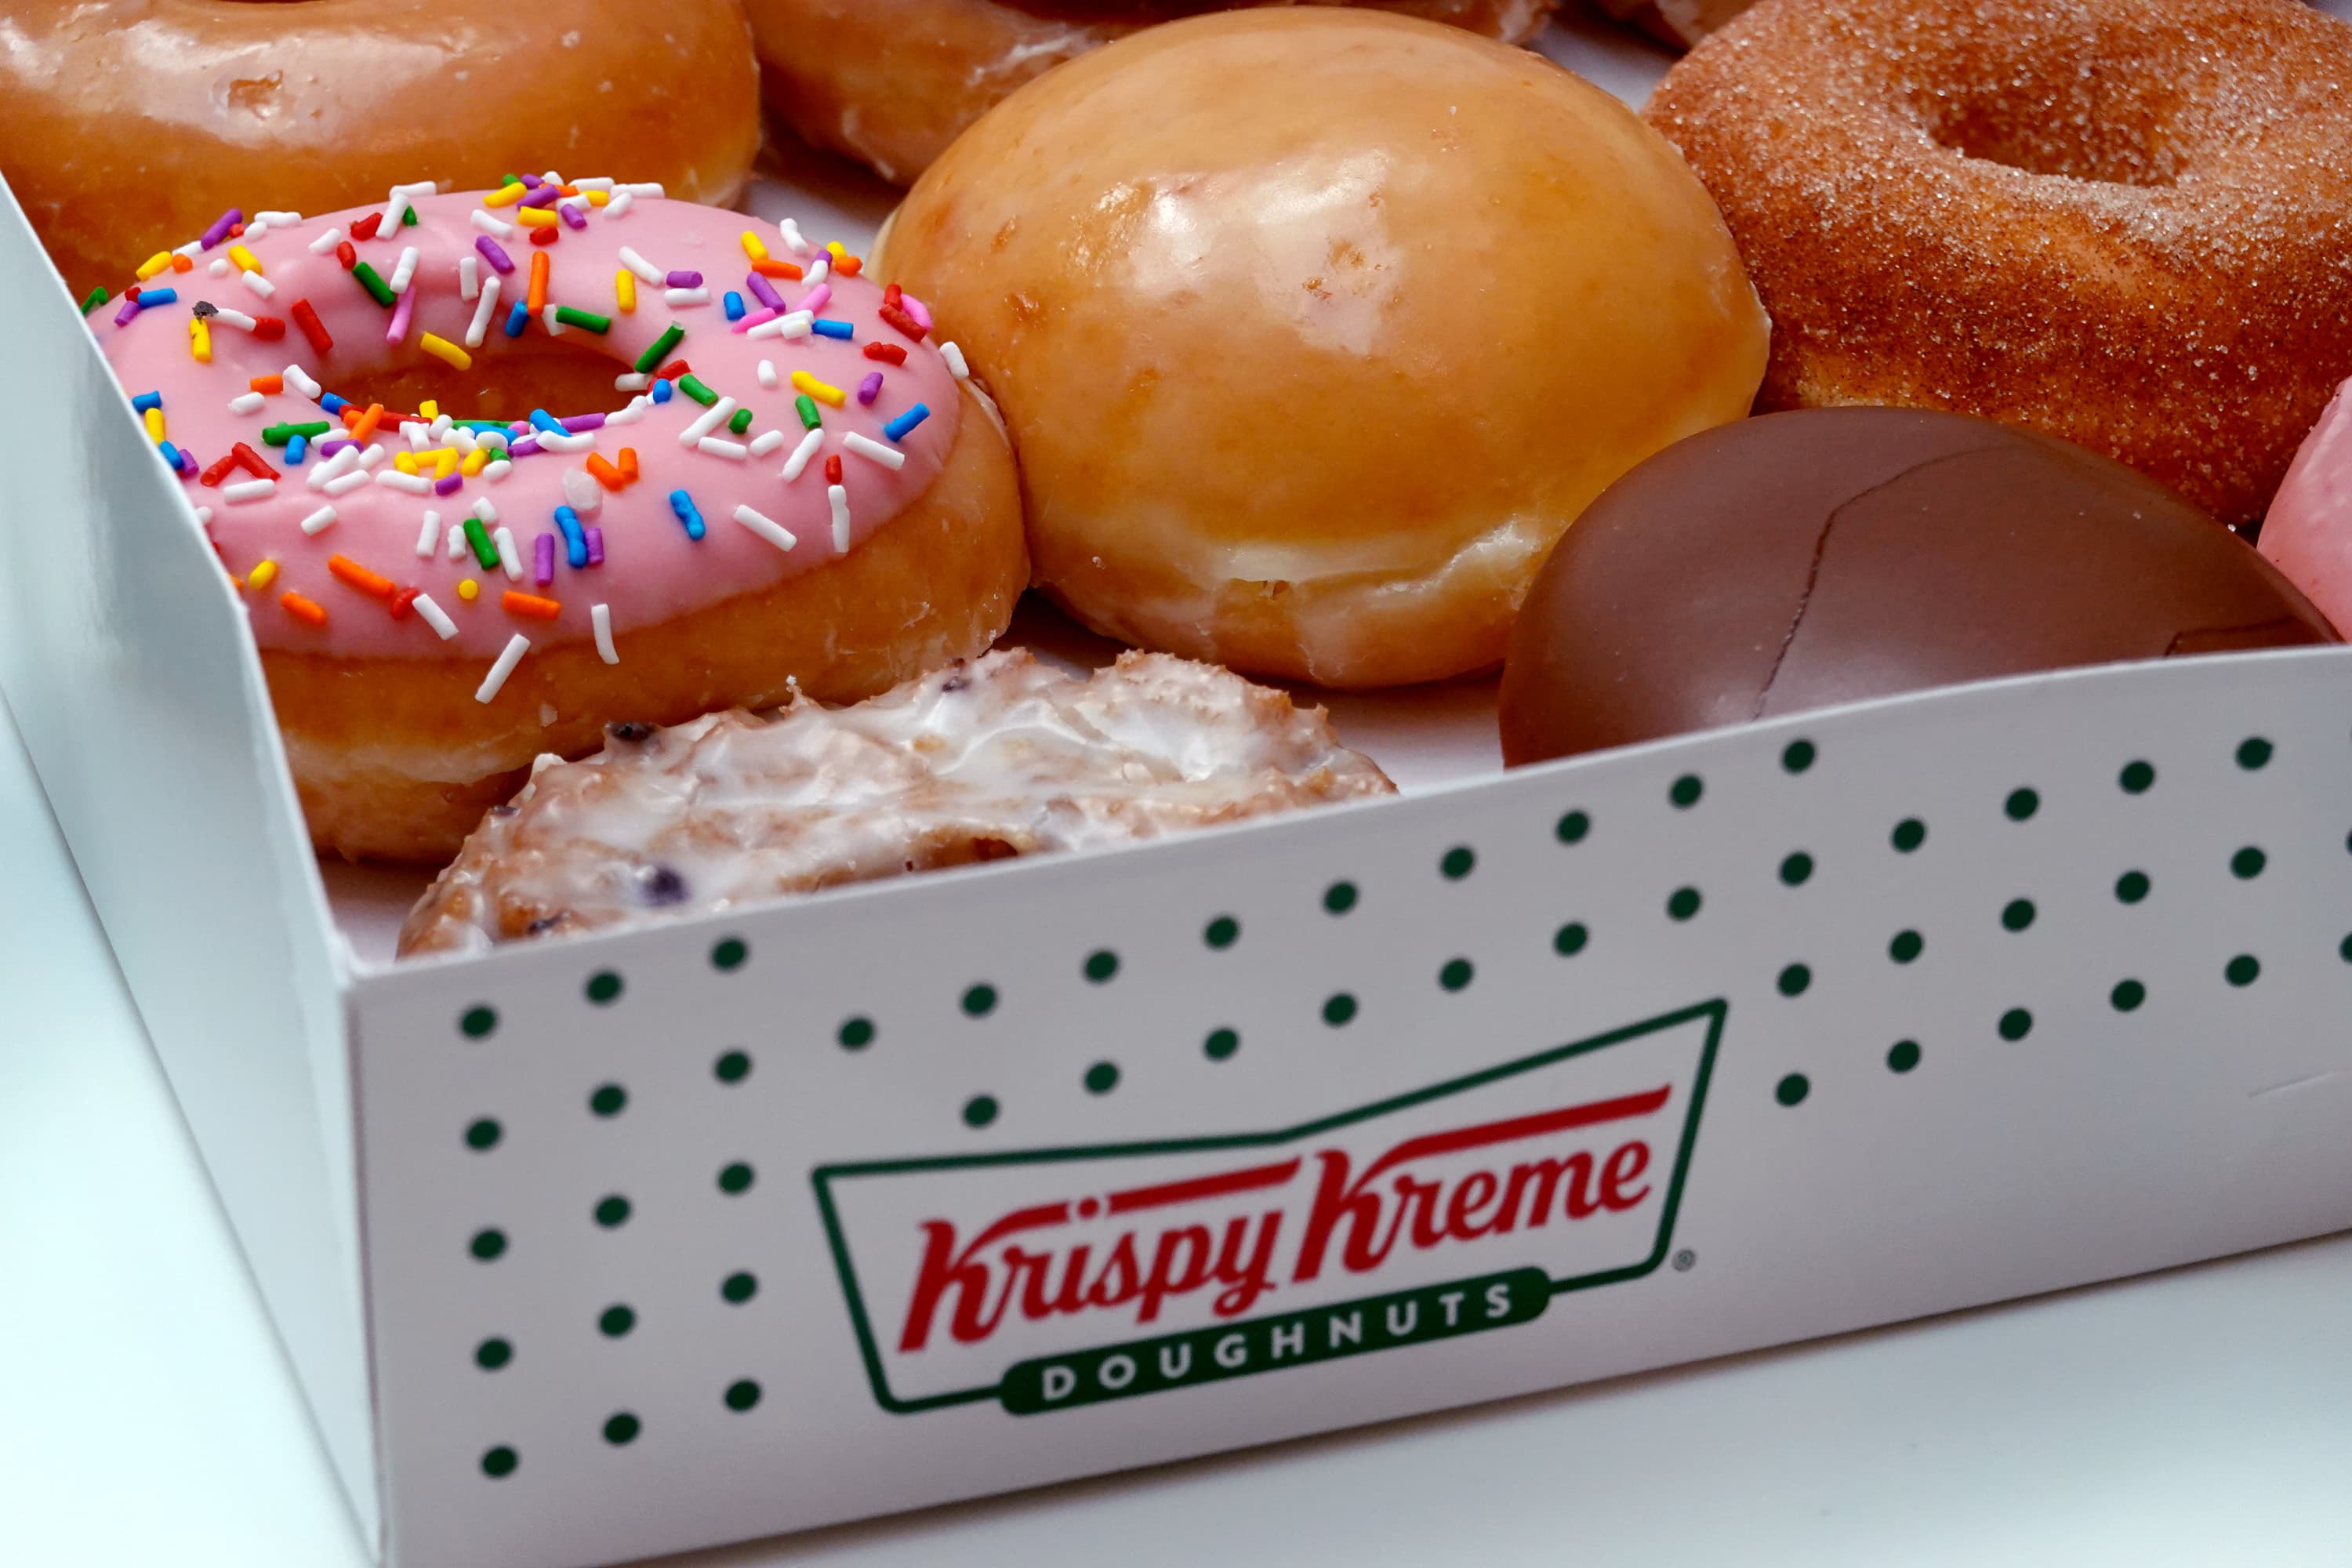 Krispy Kreme's variety donuts.